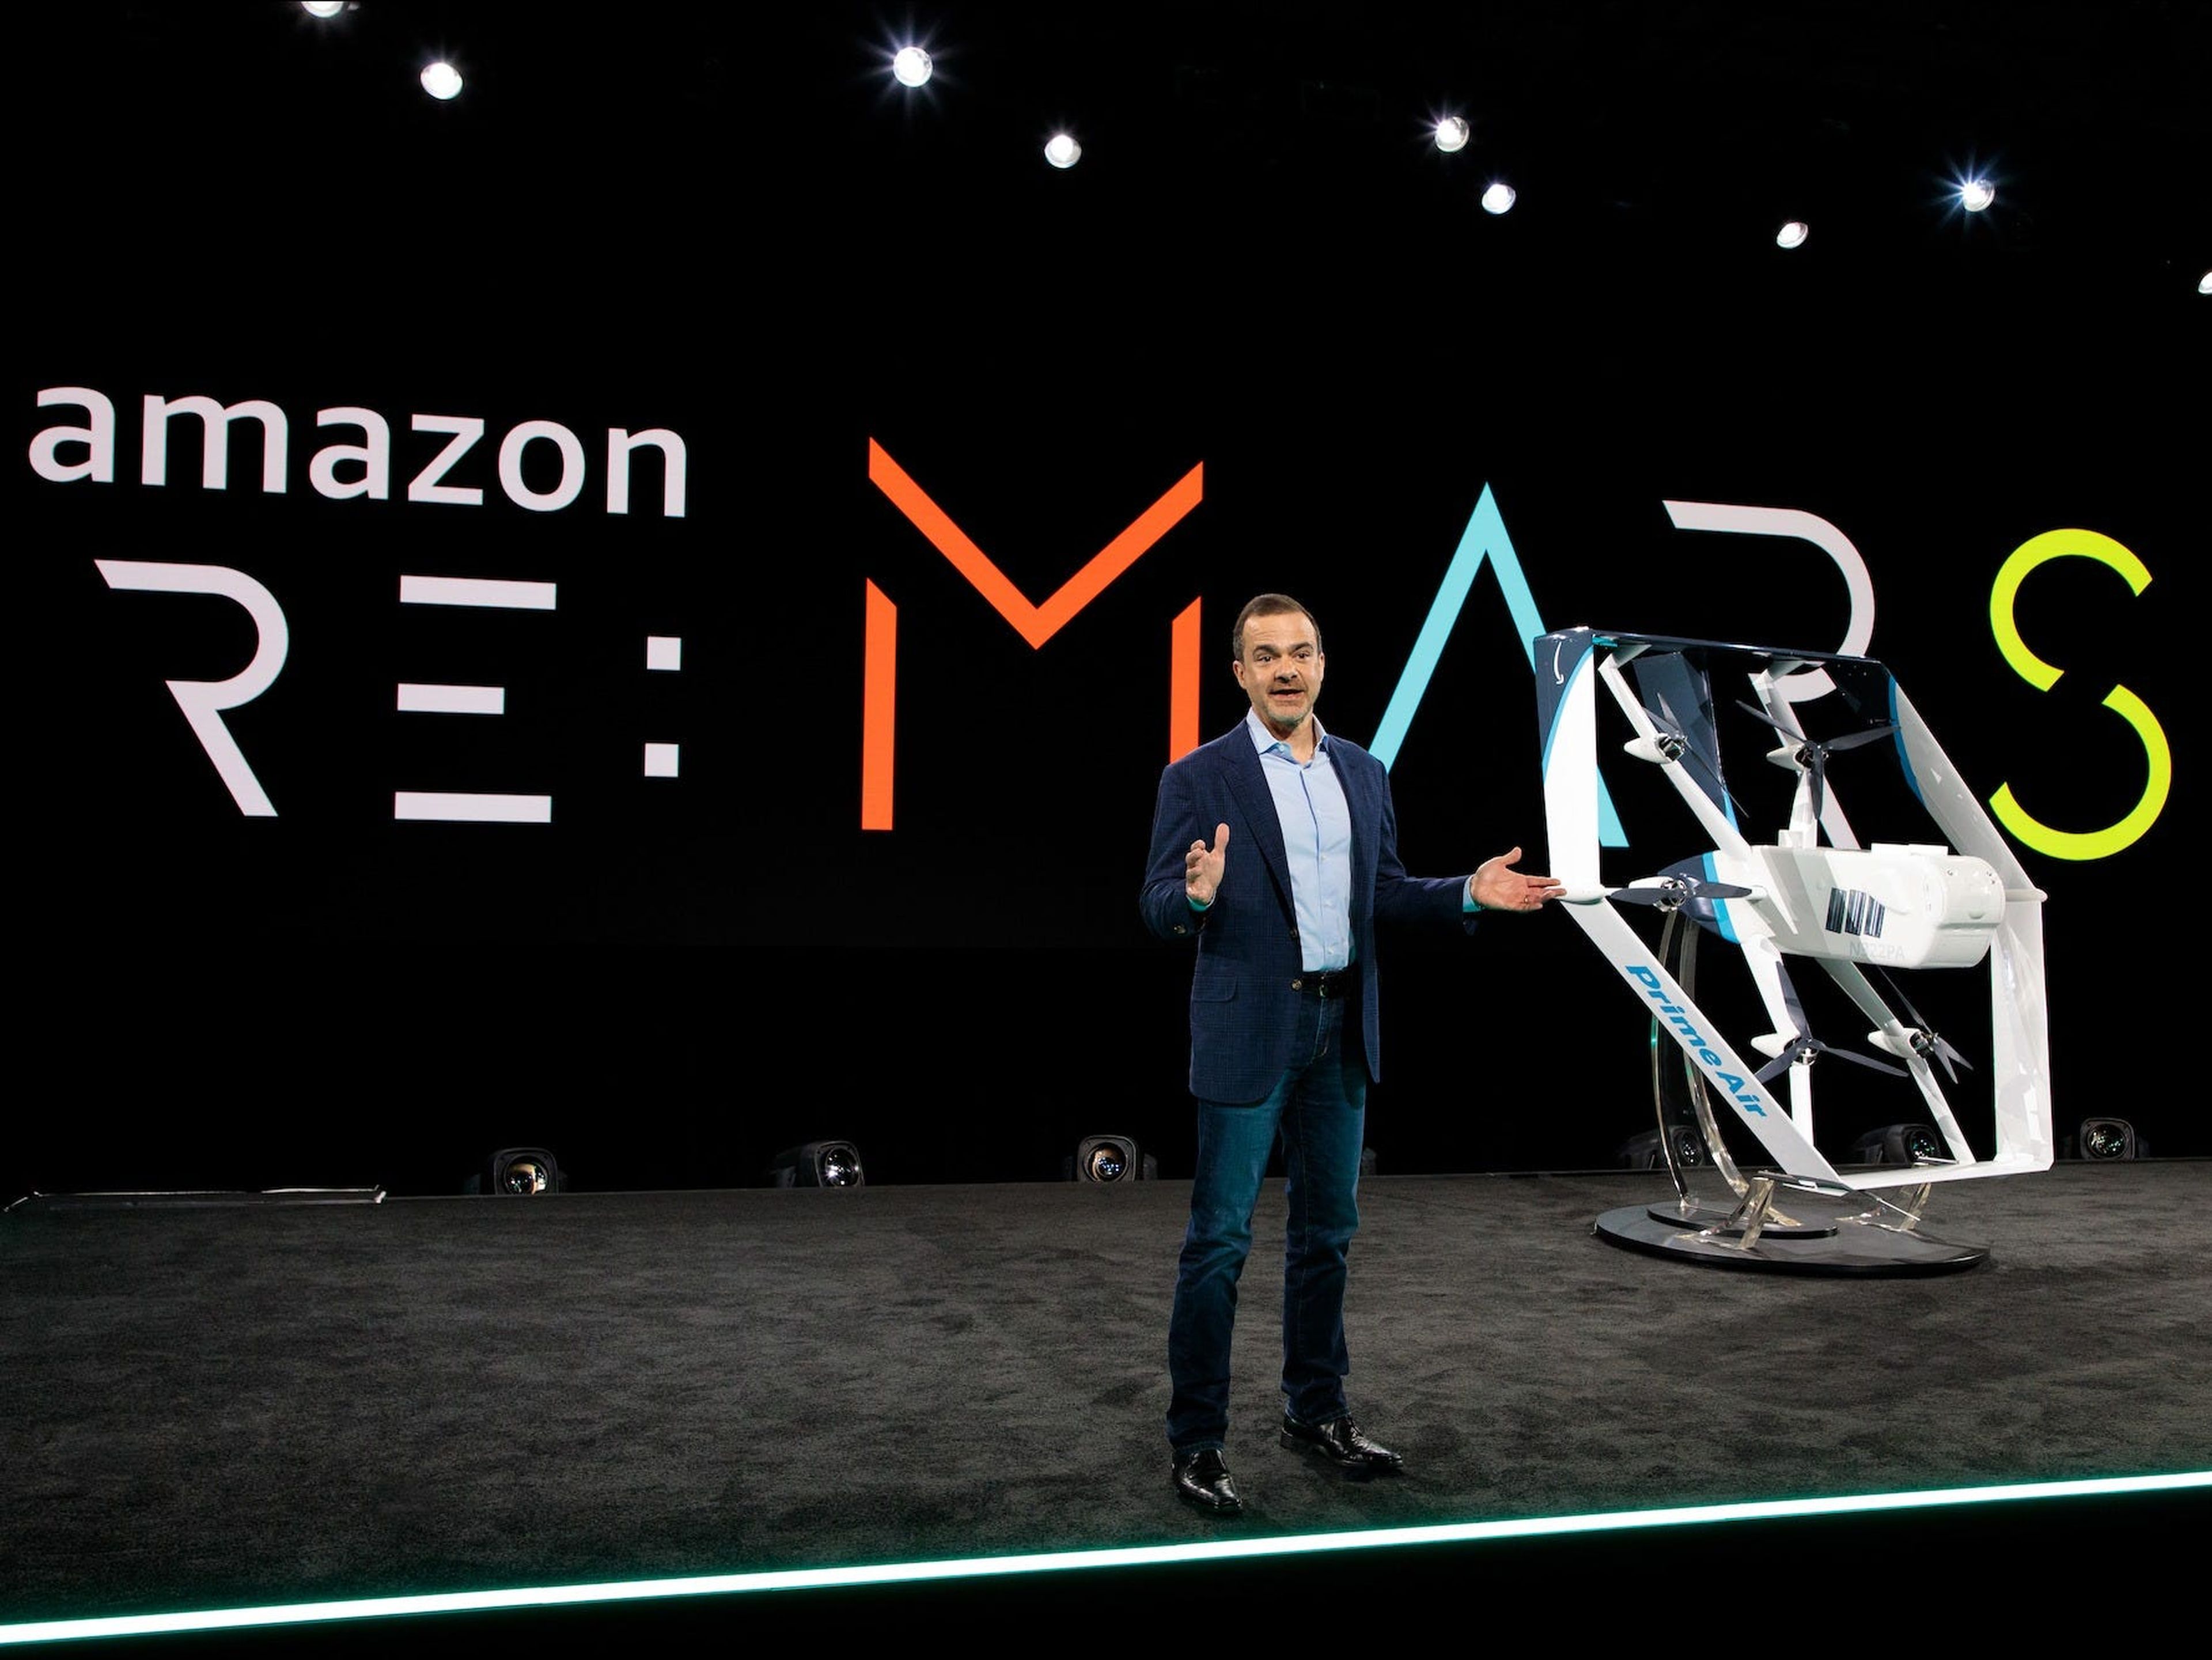 El jefe de retail de Amazon, Jeff Wilke, revela el nuevo modelo de dron de Prime Air en la conferencia de robótica Re:Mars de 2019.